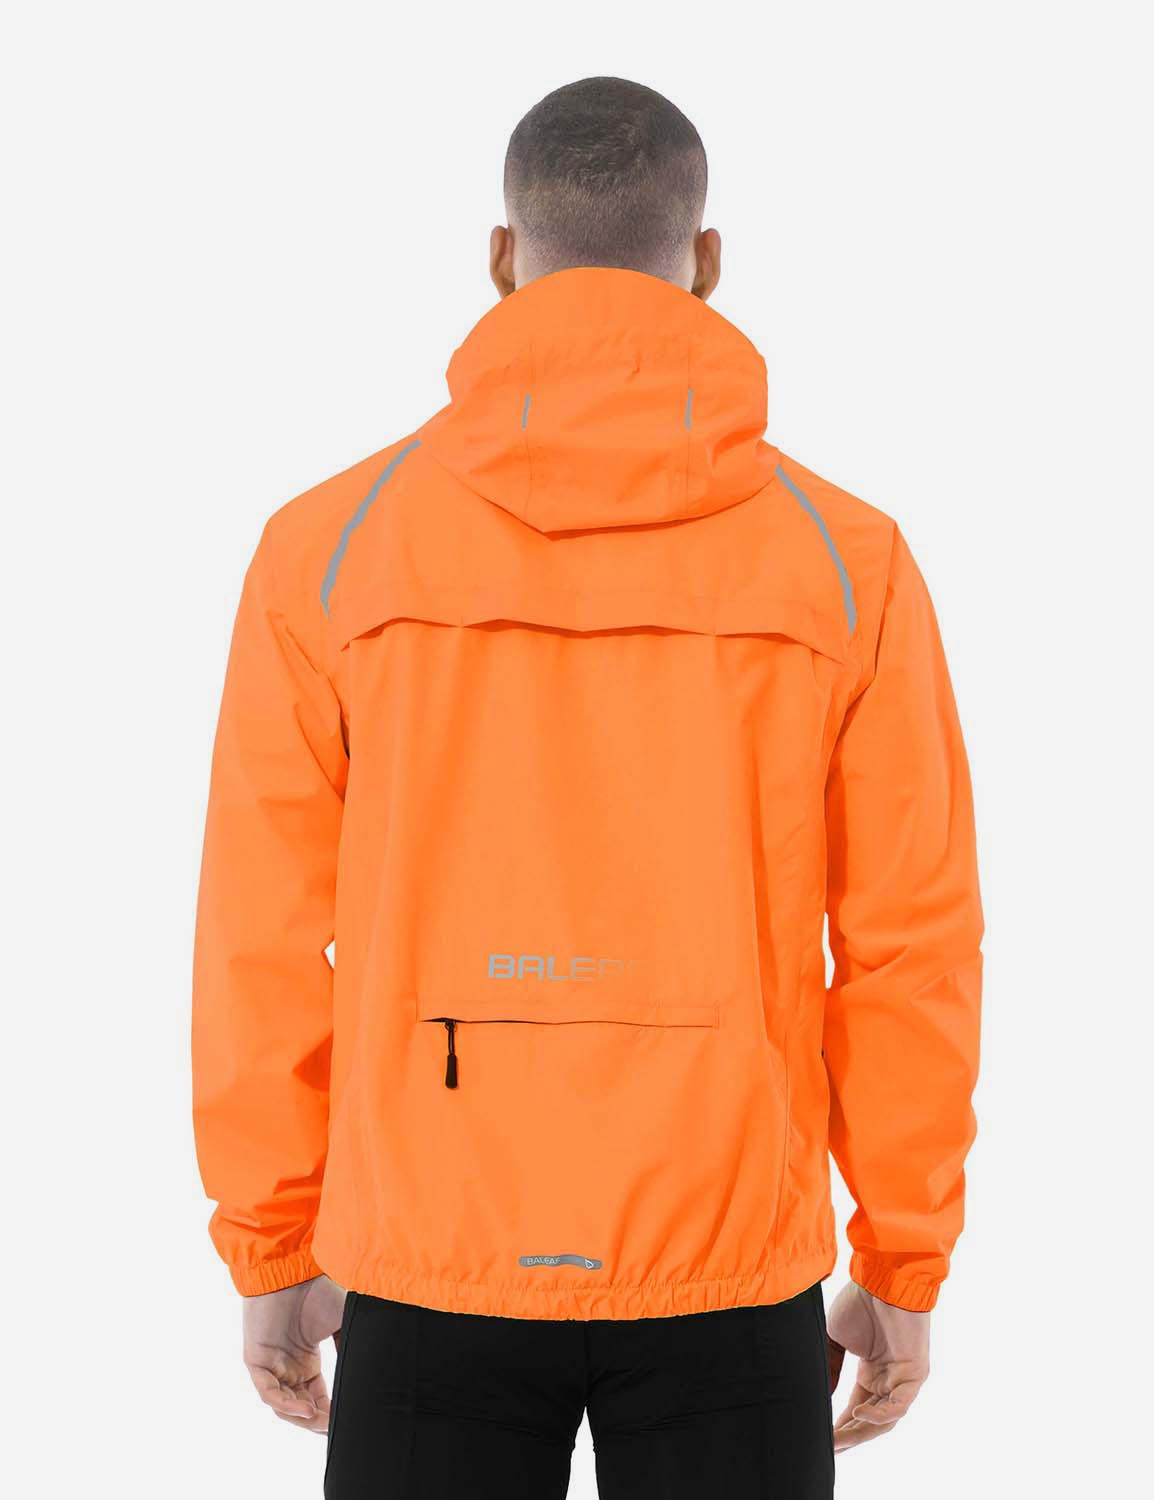 Baleaf Men's Fluorescent Waterproof Packable Windbreaker Track Jacket aaa467 Vibrant Orange Back